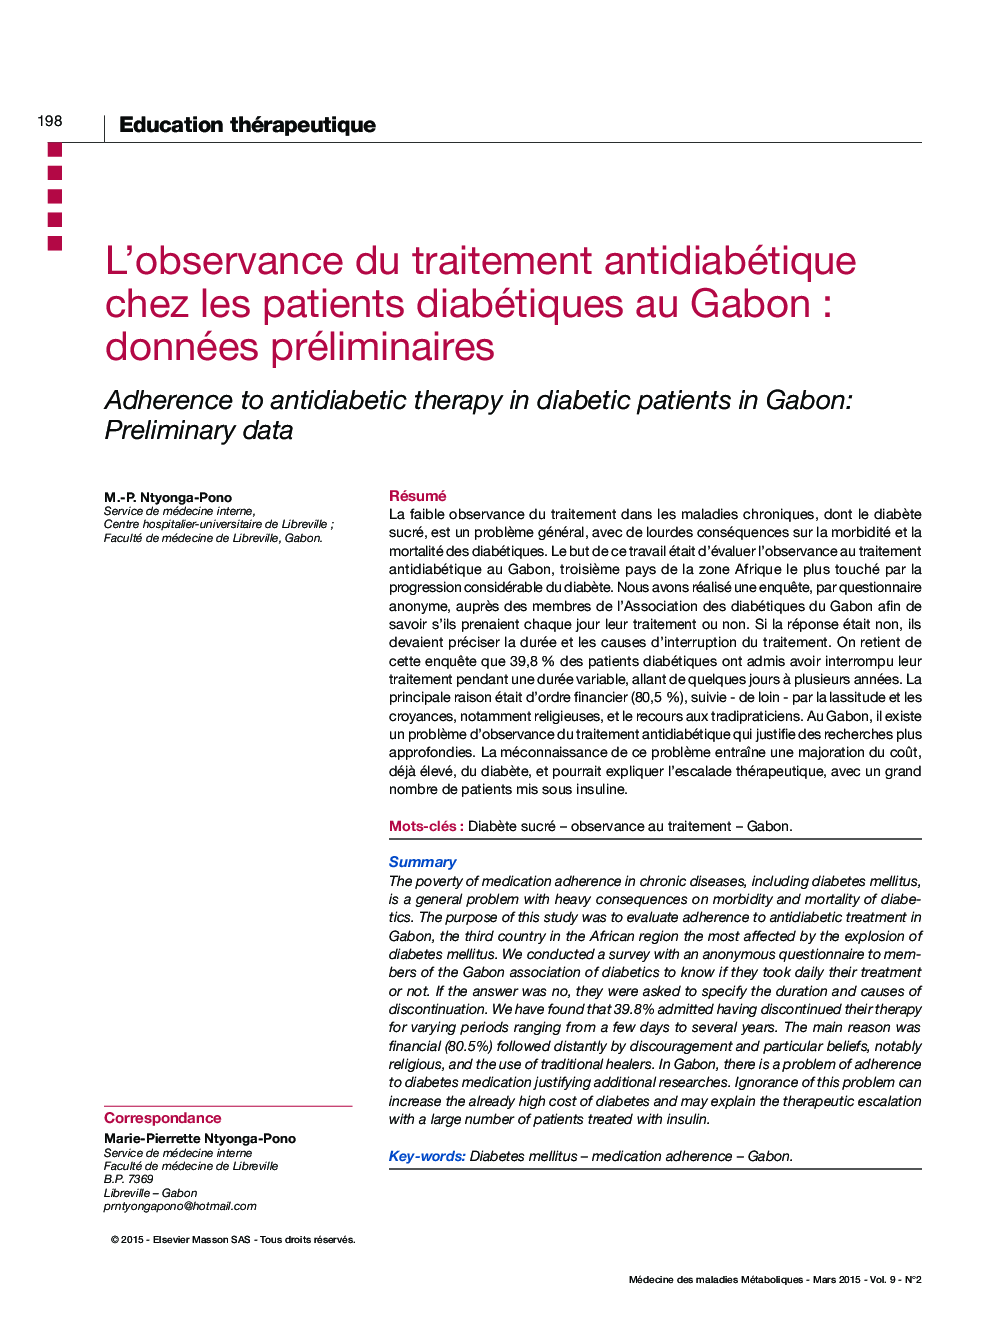 L'observance du traitement antidiabétique chez les patients diabétiques au Gabon : données préliminaires